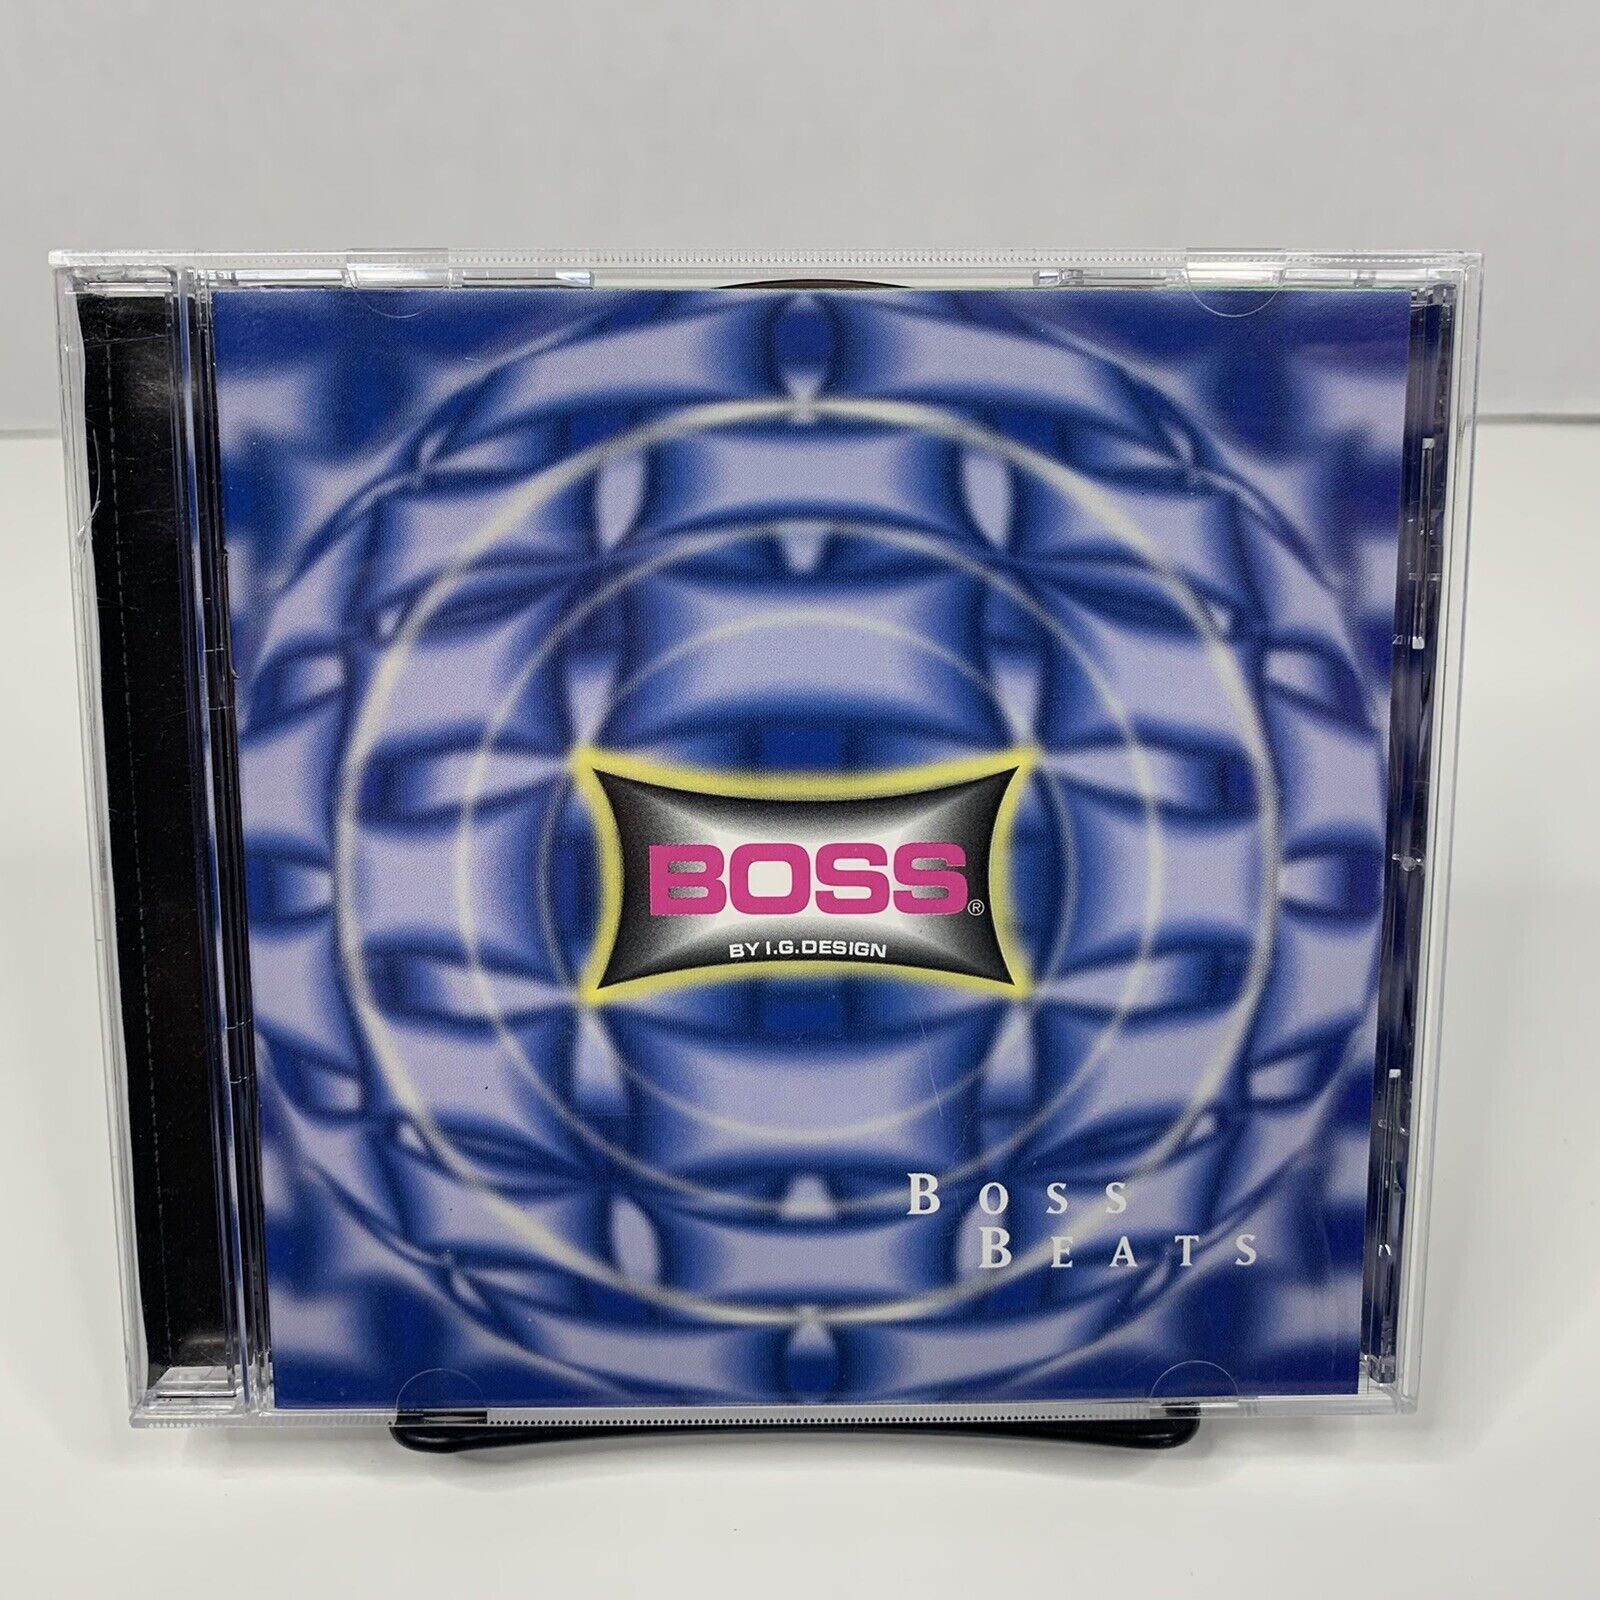 BOSS BEATS by I.G. Design (CD, 1997, Sony) Dr. Dre, Da Brat RAP HIP HOP